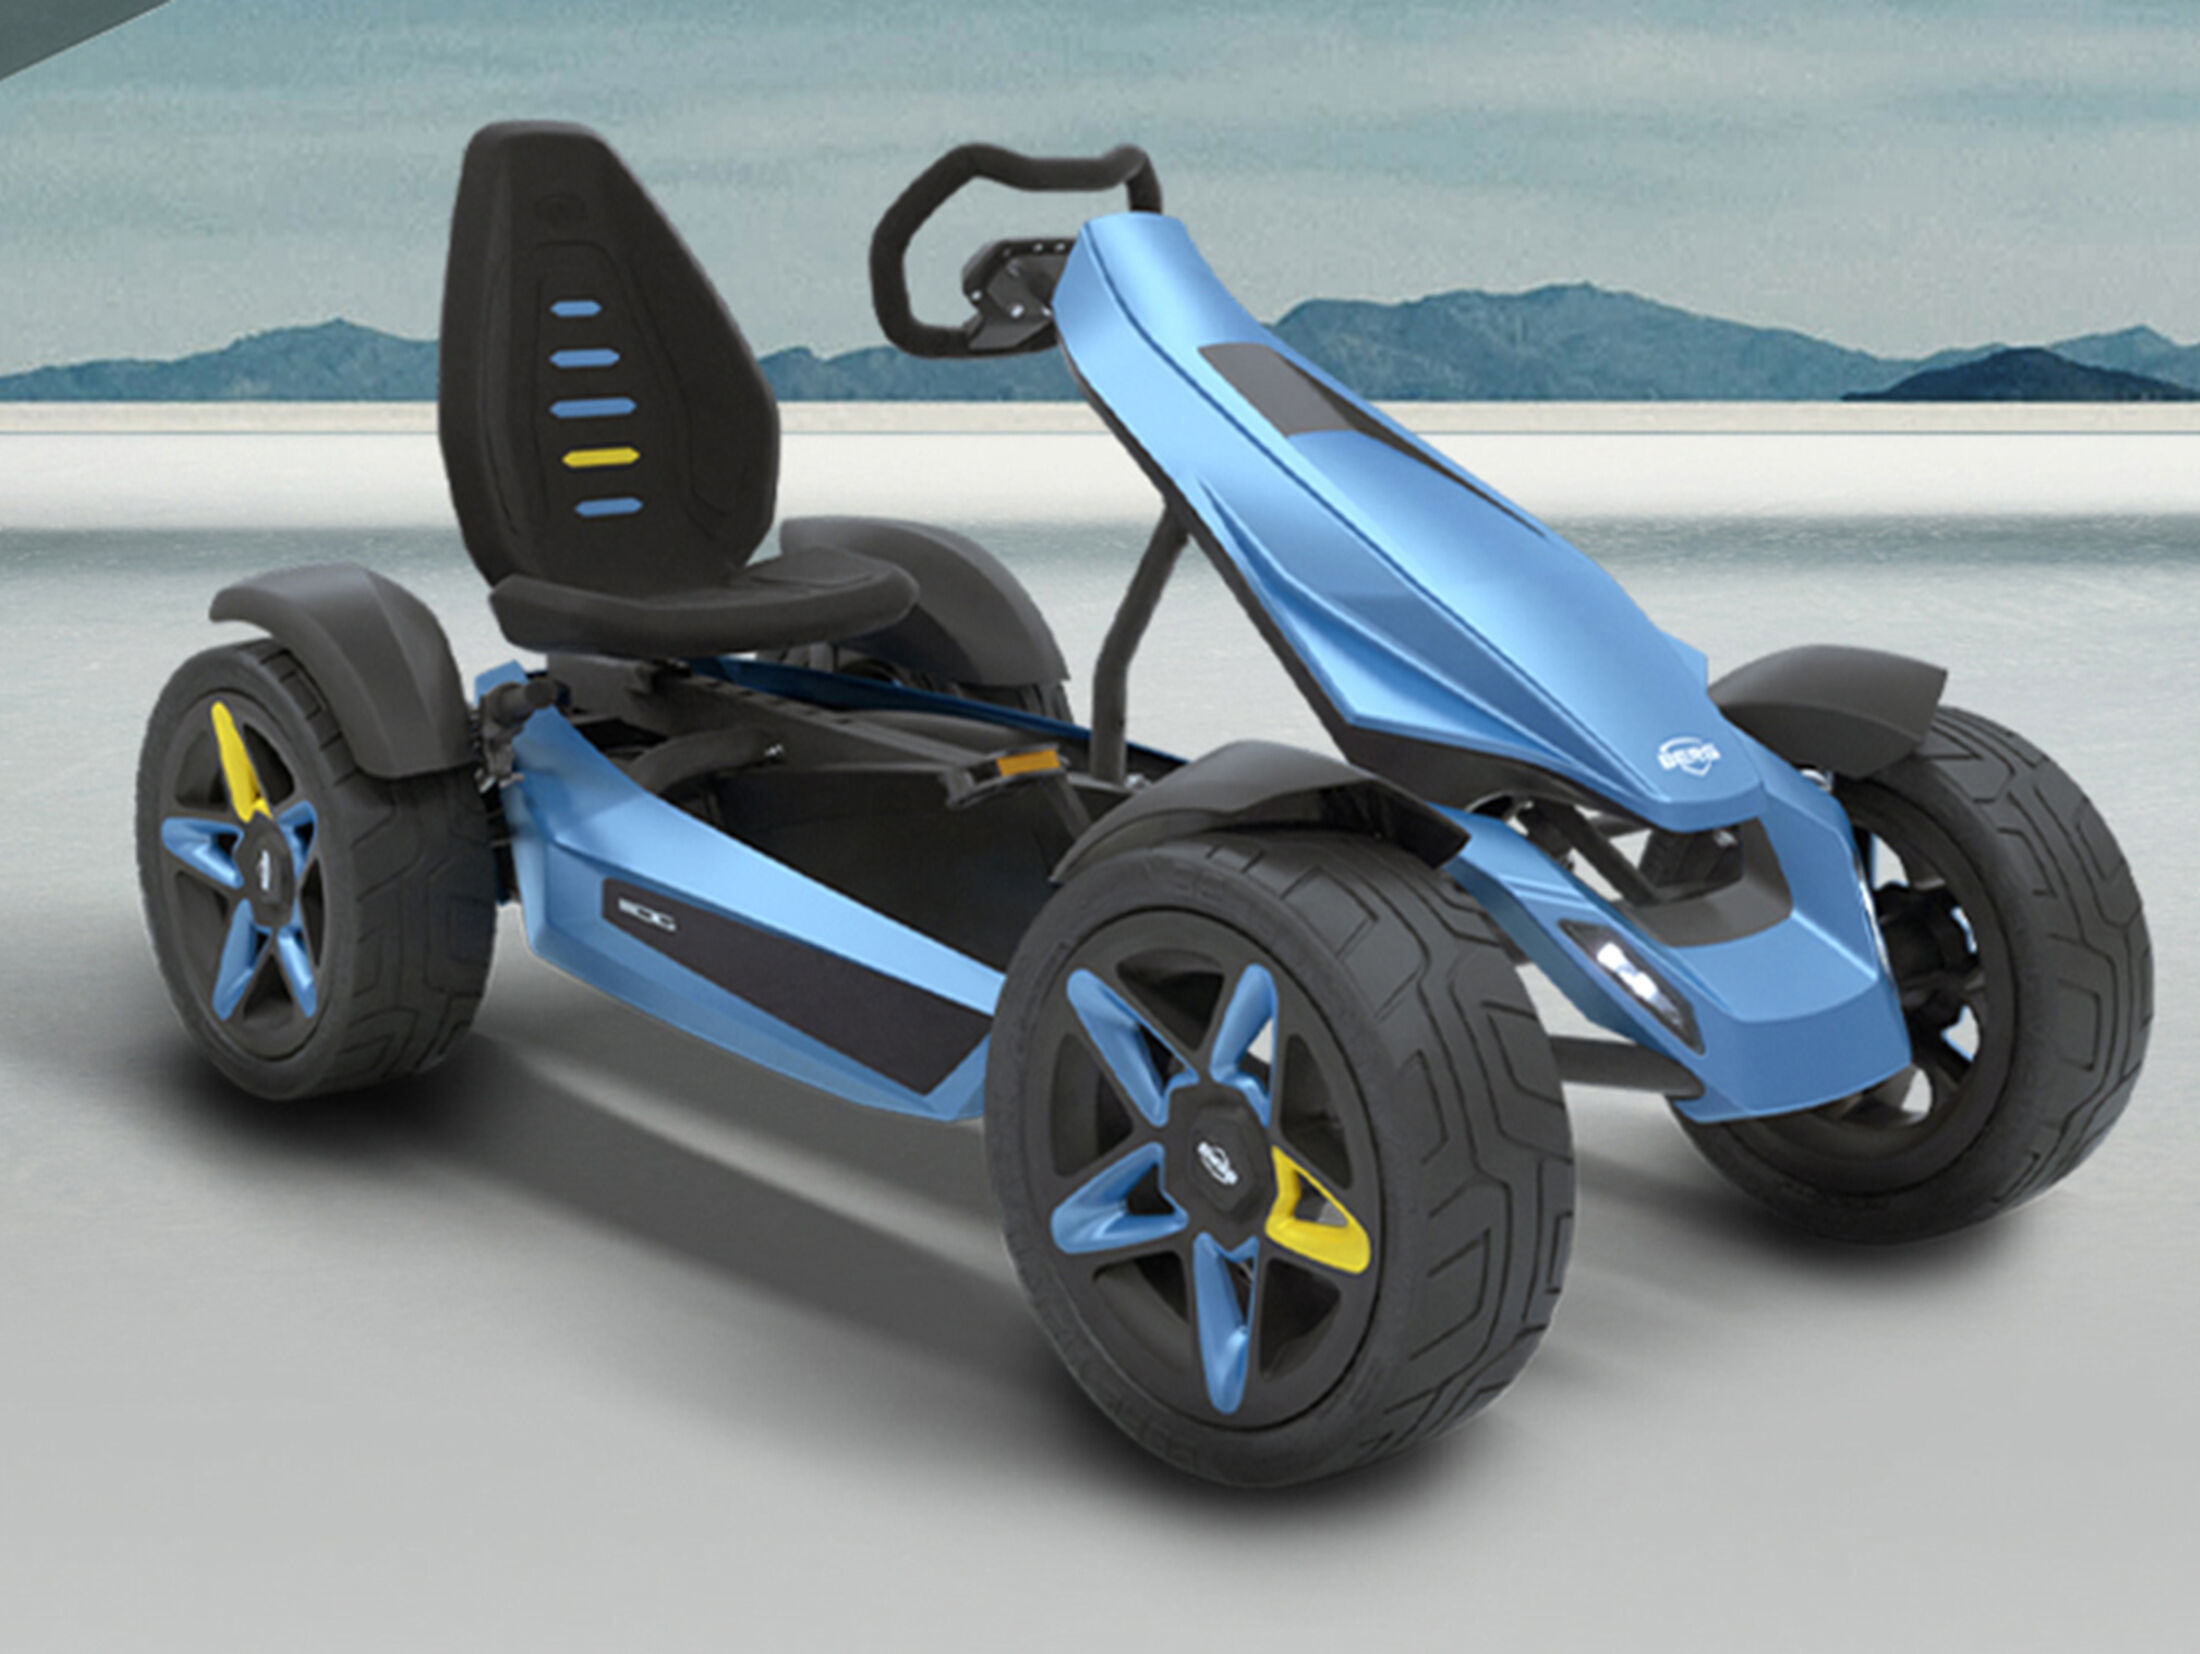 Aus Kettcar wird Go Kart - für nur 150€ 😉 mit Pocketbike Motor